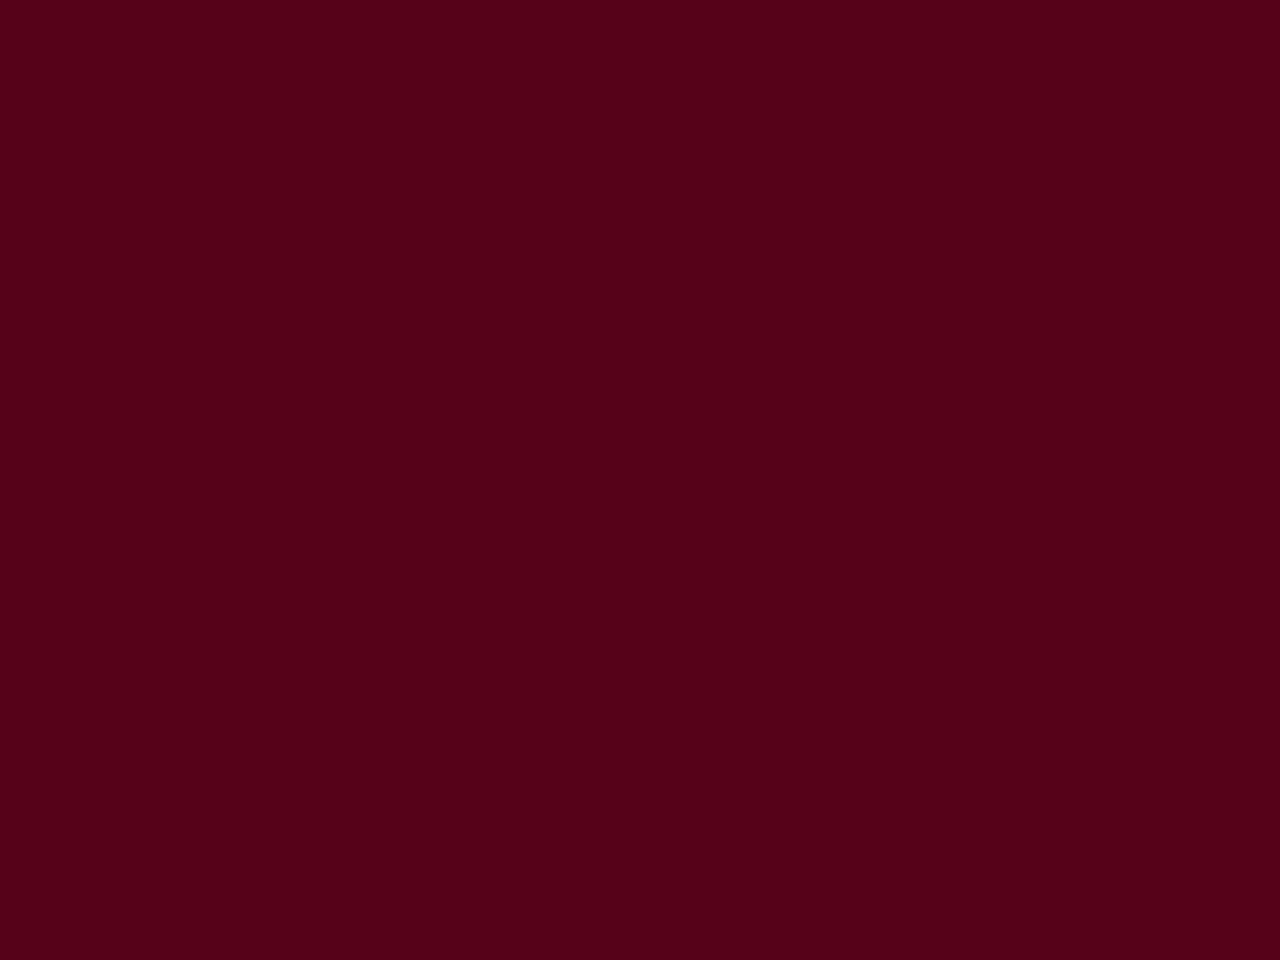 1280x960 Dark Scarlet Solid Color Background